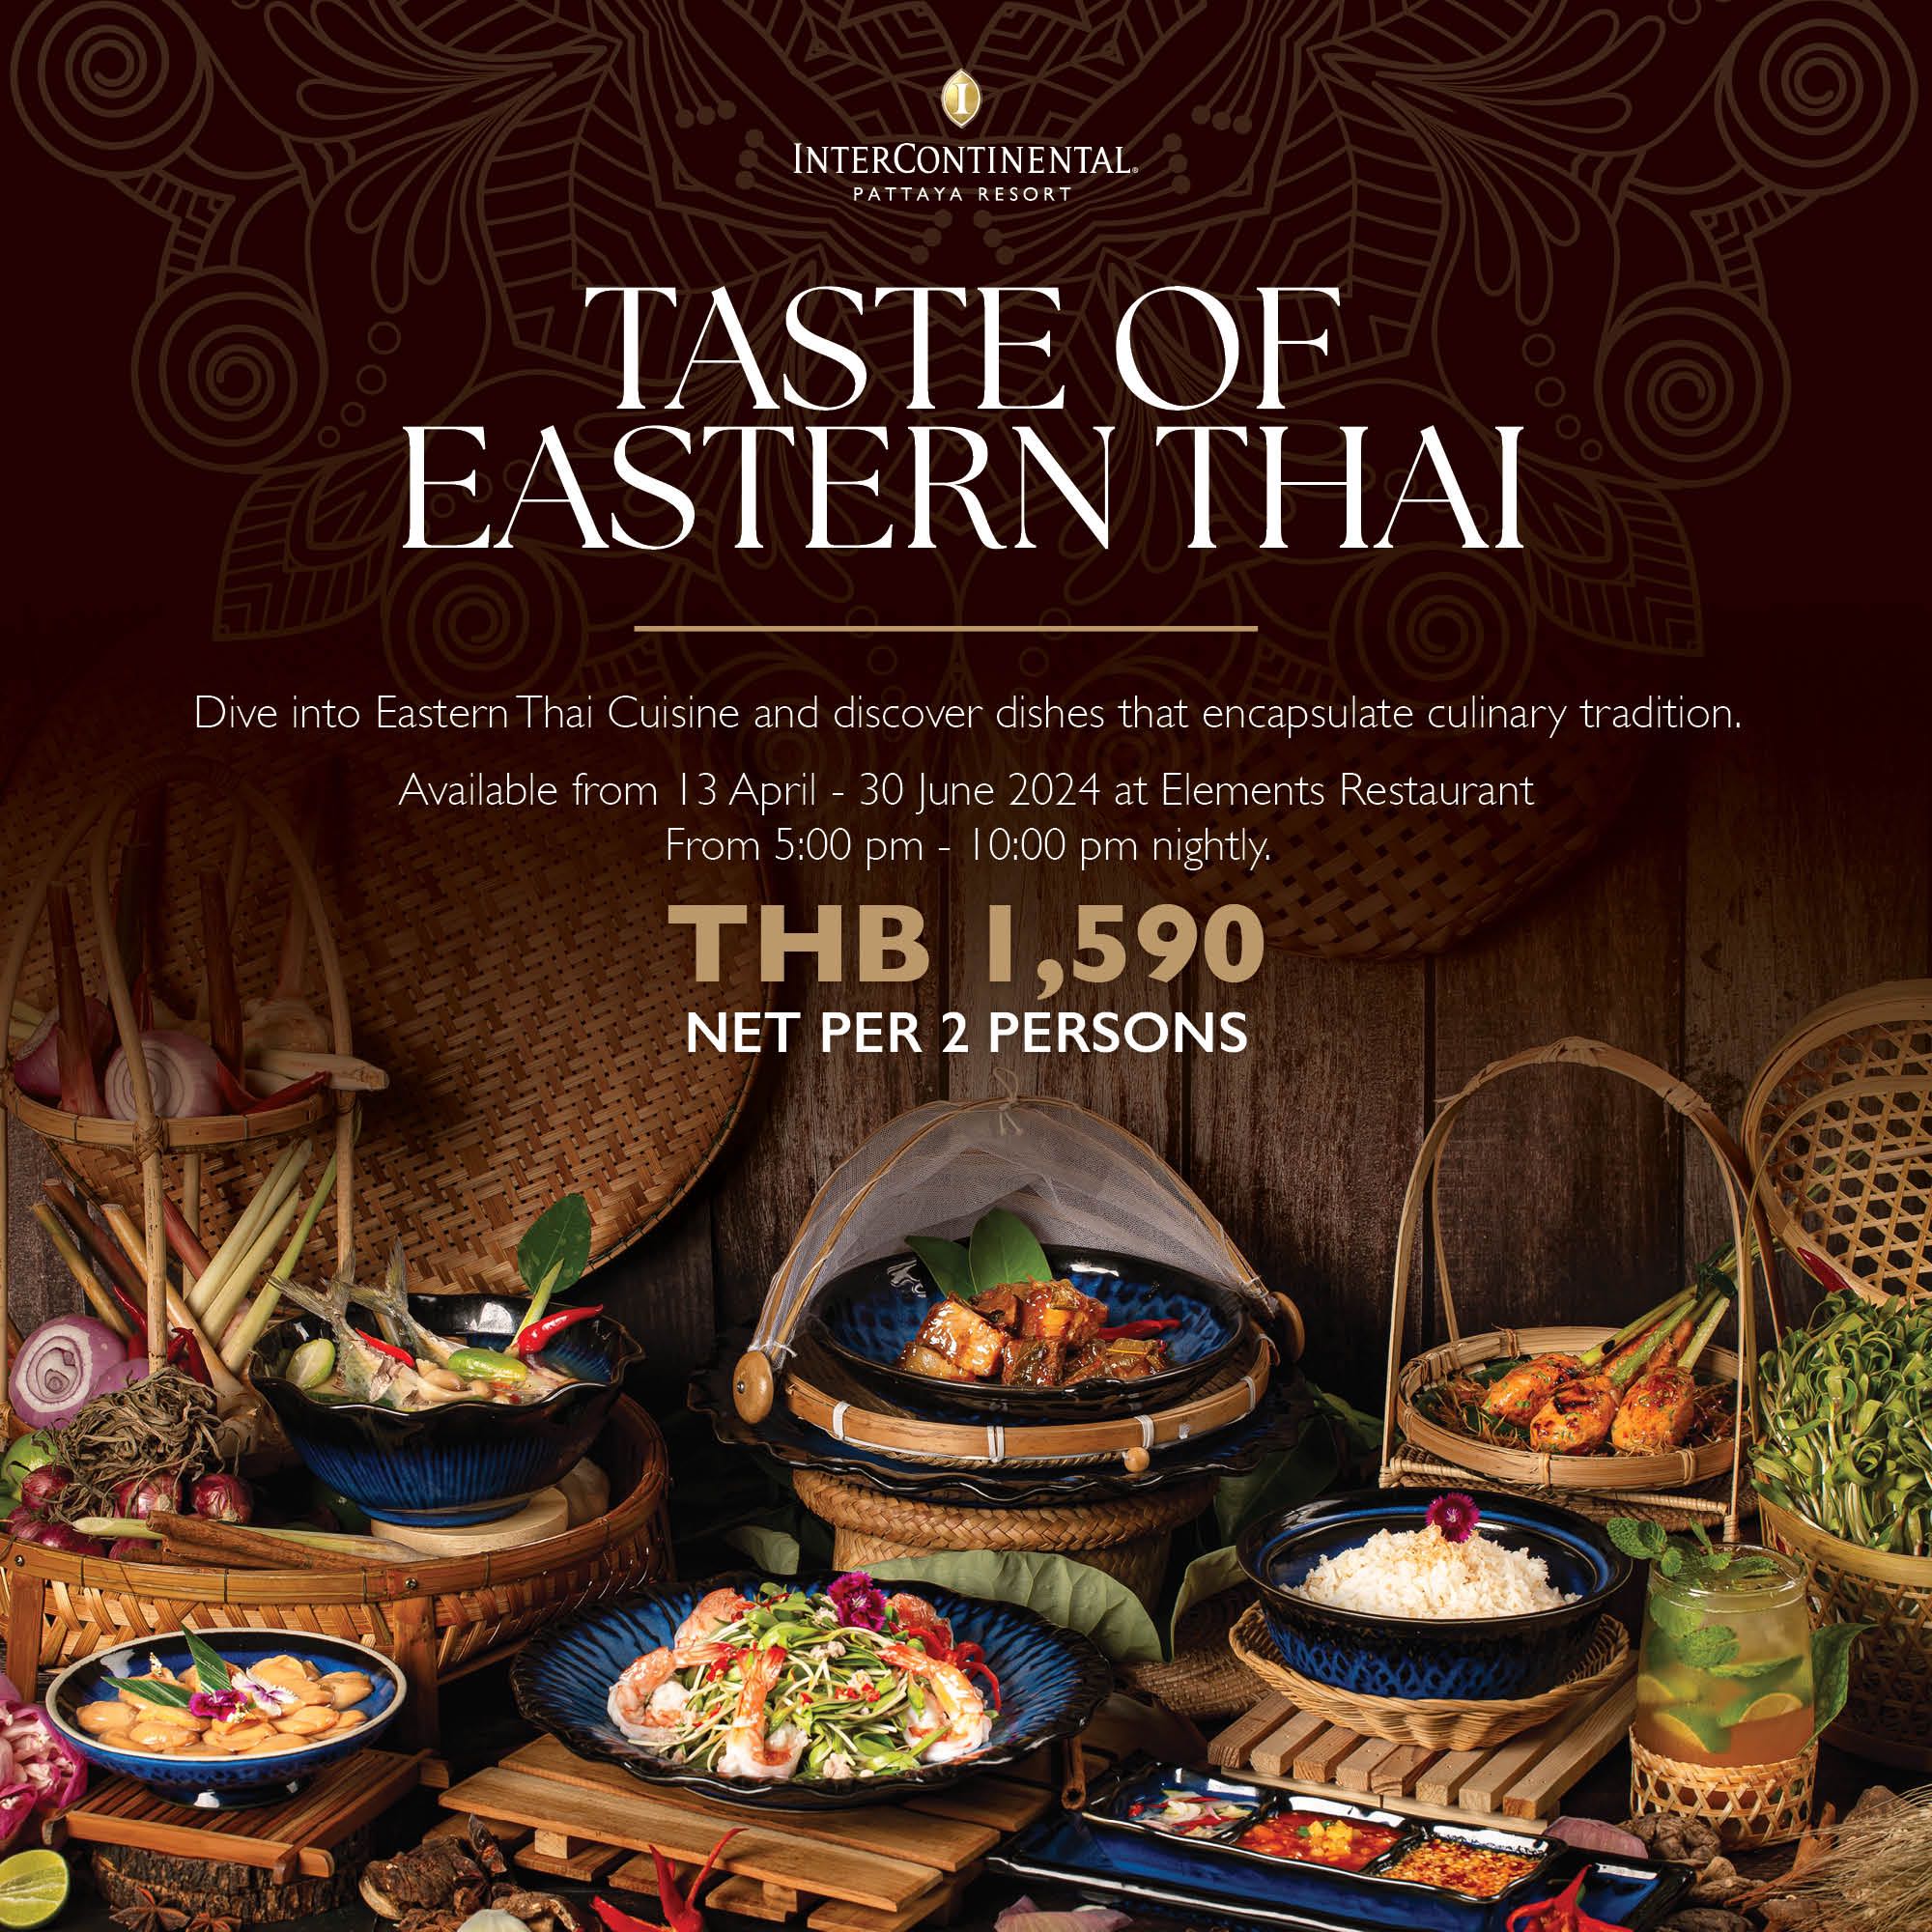 Taste of Eastern Thai |  ราคาเซ็ทละ 1,590 บาทสุทธิ / ต่อ 2 ท่าน